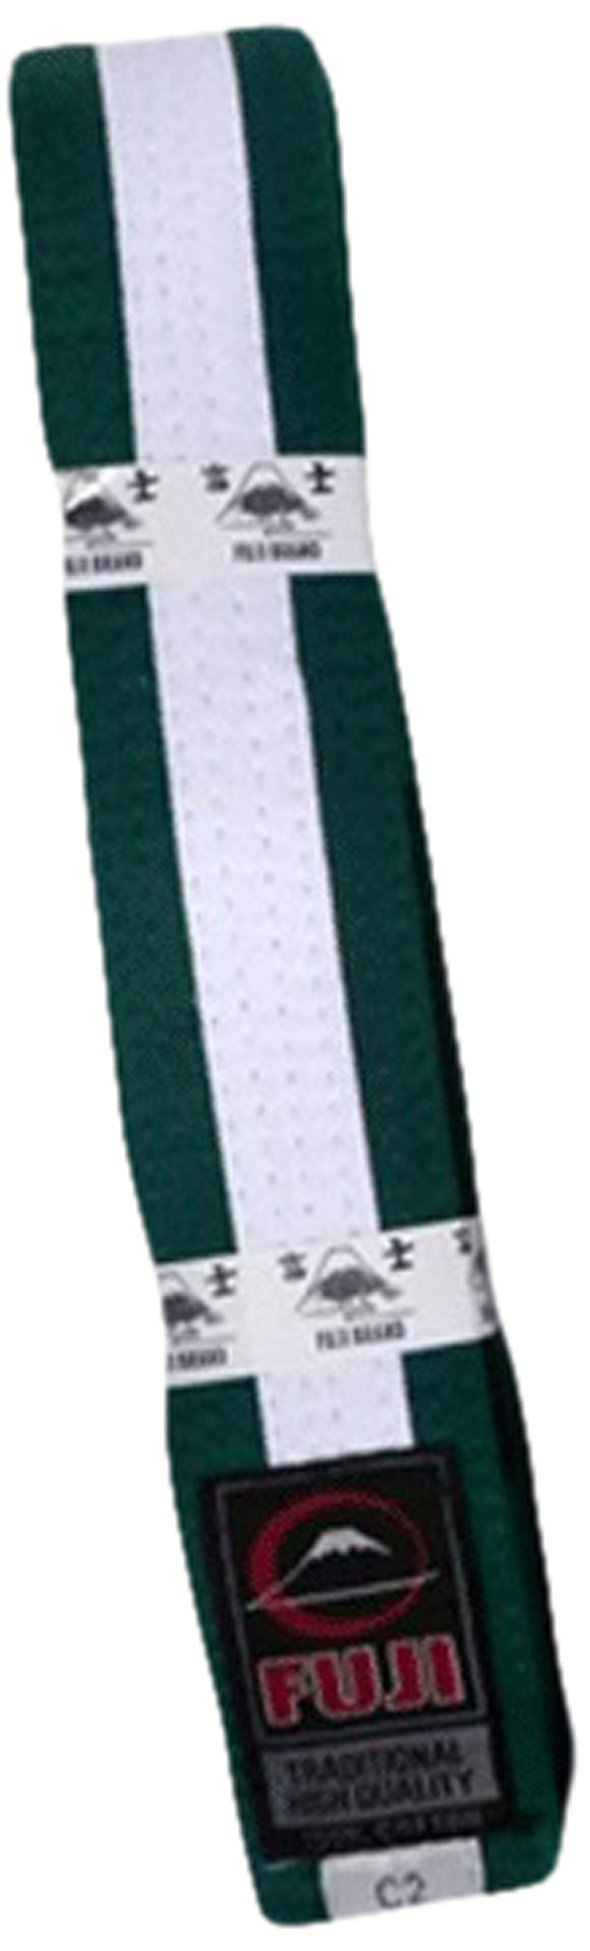 [AUSTRALIA] - Fuji BJJ Belt, Green/White, C2 